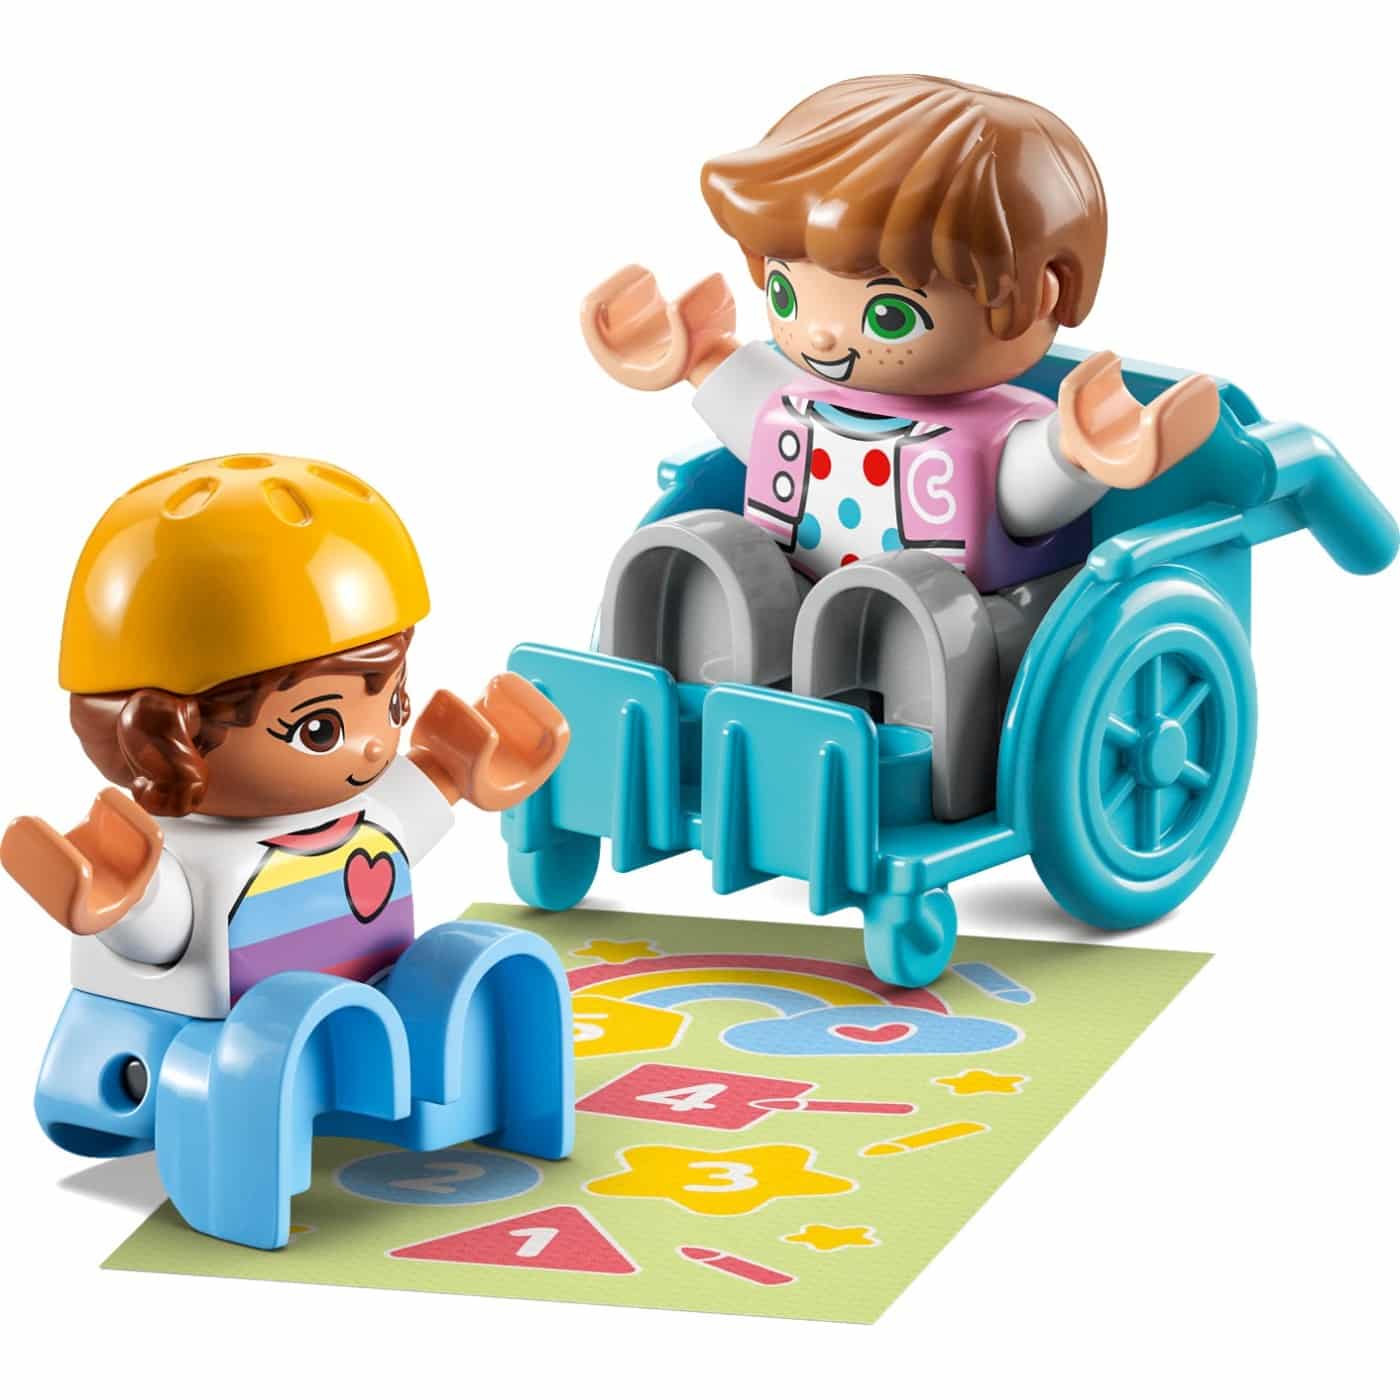 10992 Lego Duplo Η Ζωή Στον Παιδικό Σταθμό